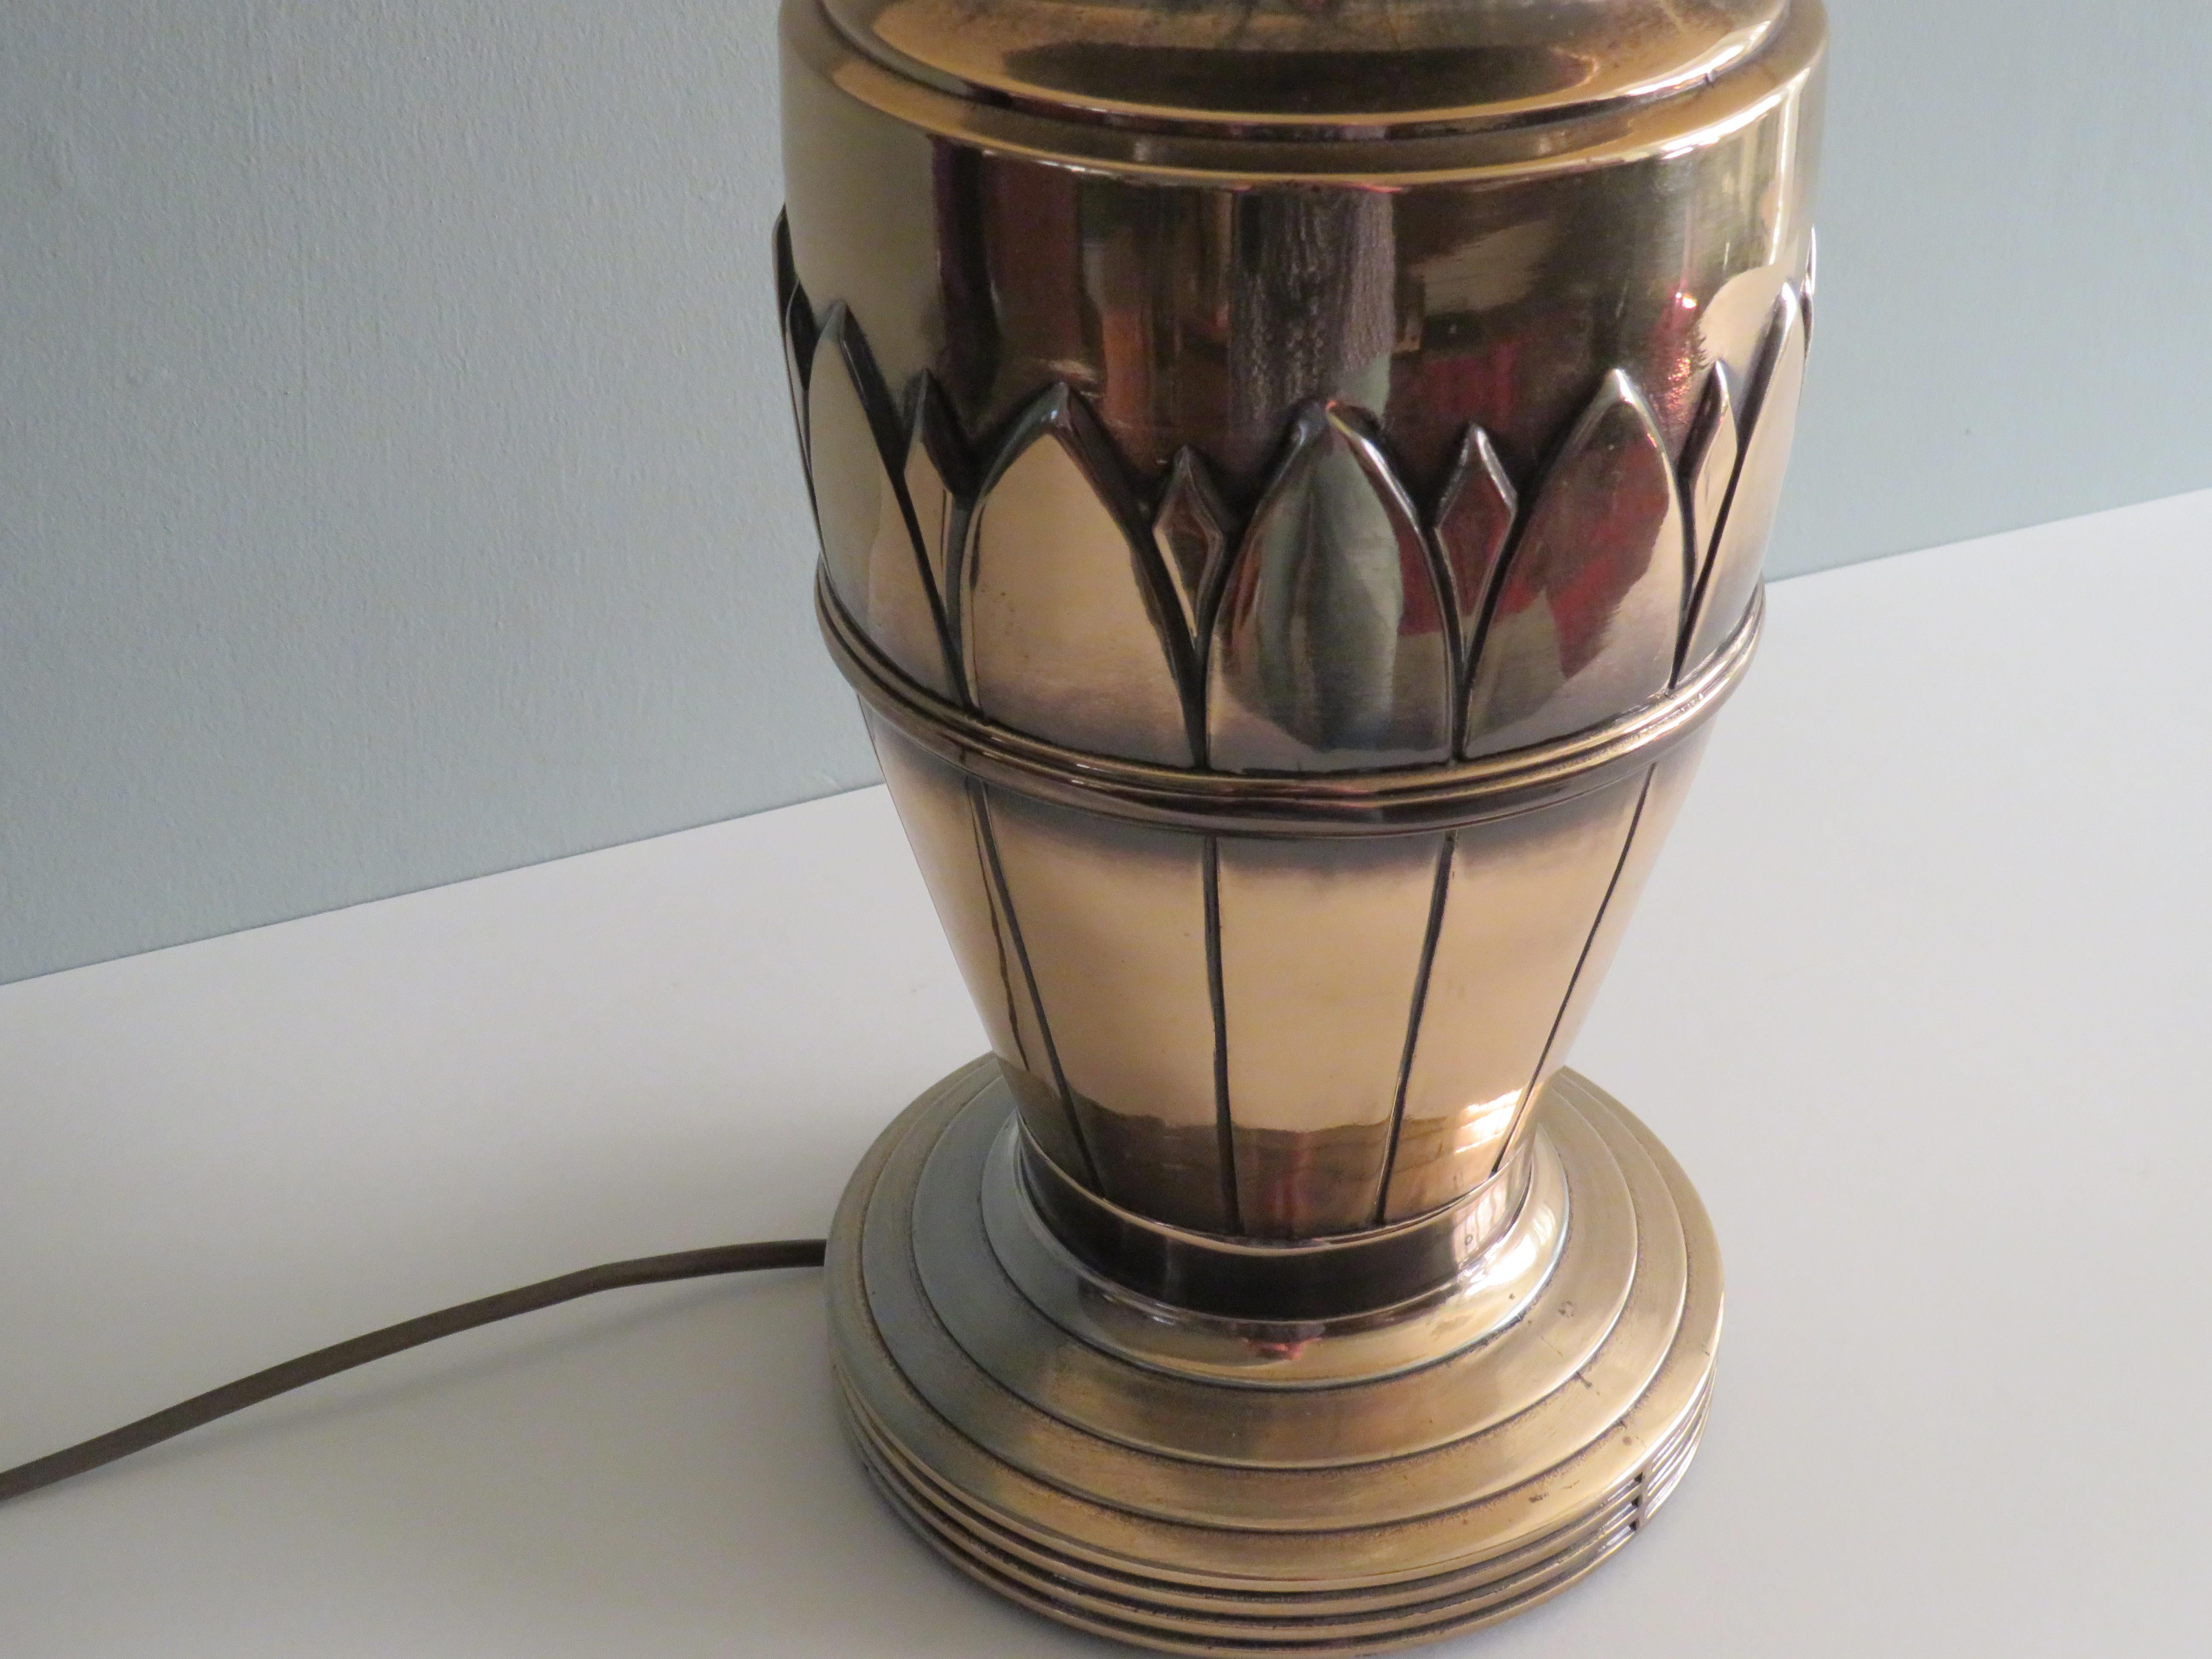 Tischlampe aus der Mitte des Jahrhunderts von Deknudt lighting, Belgien 1970
Große Tischlampe aus Messing mit Blattmotiv und cremefarbenem Original-Lampenschirm.
Diese Lampe wurde in den 1970er Jahren von Deknudt, Belgien, hergestellt.
Deknudt